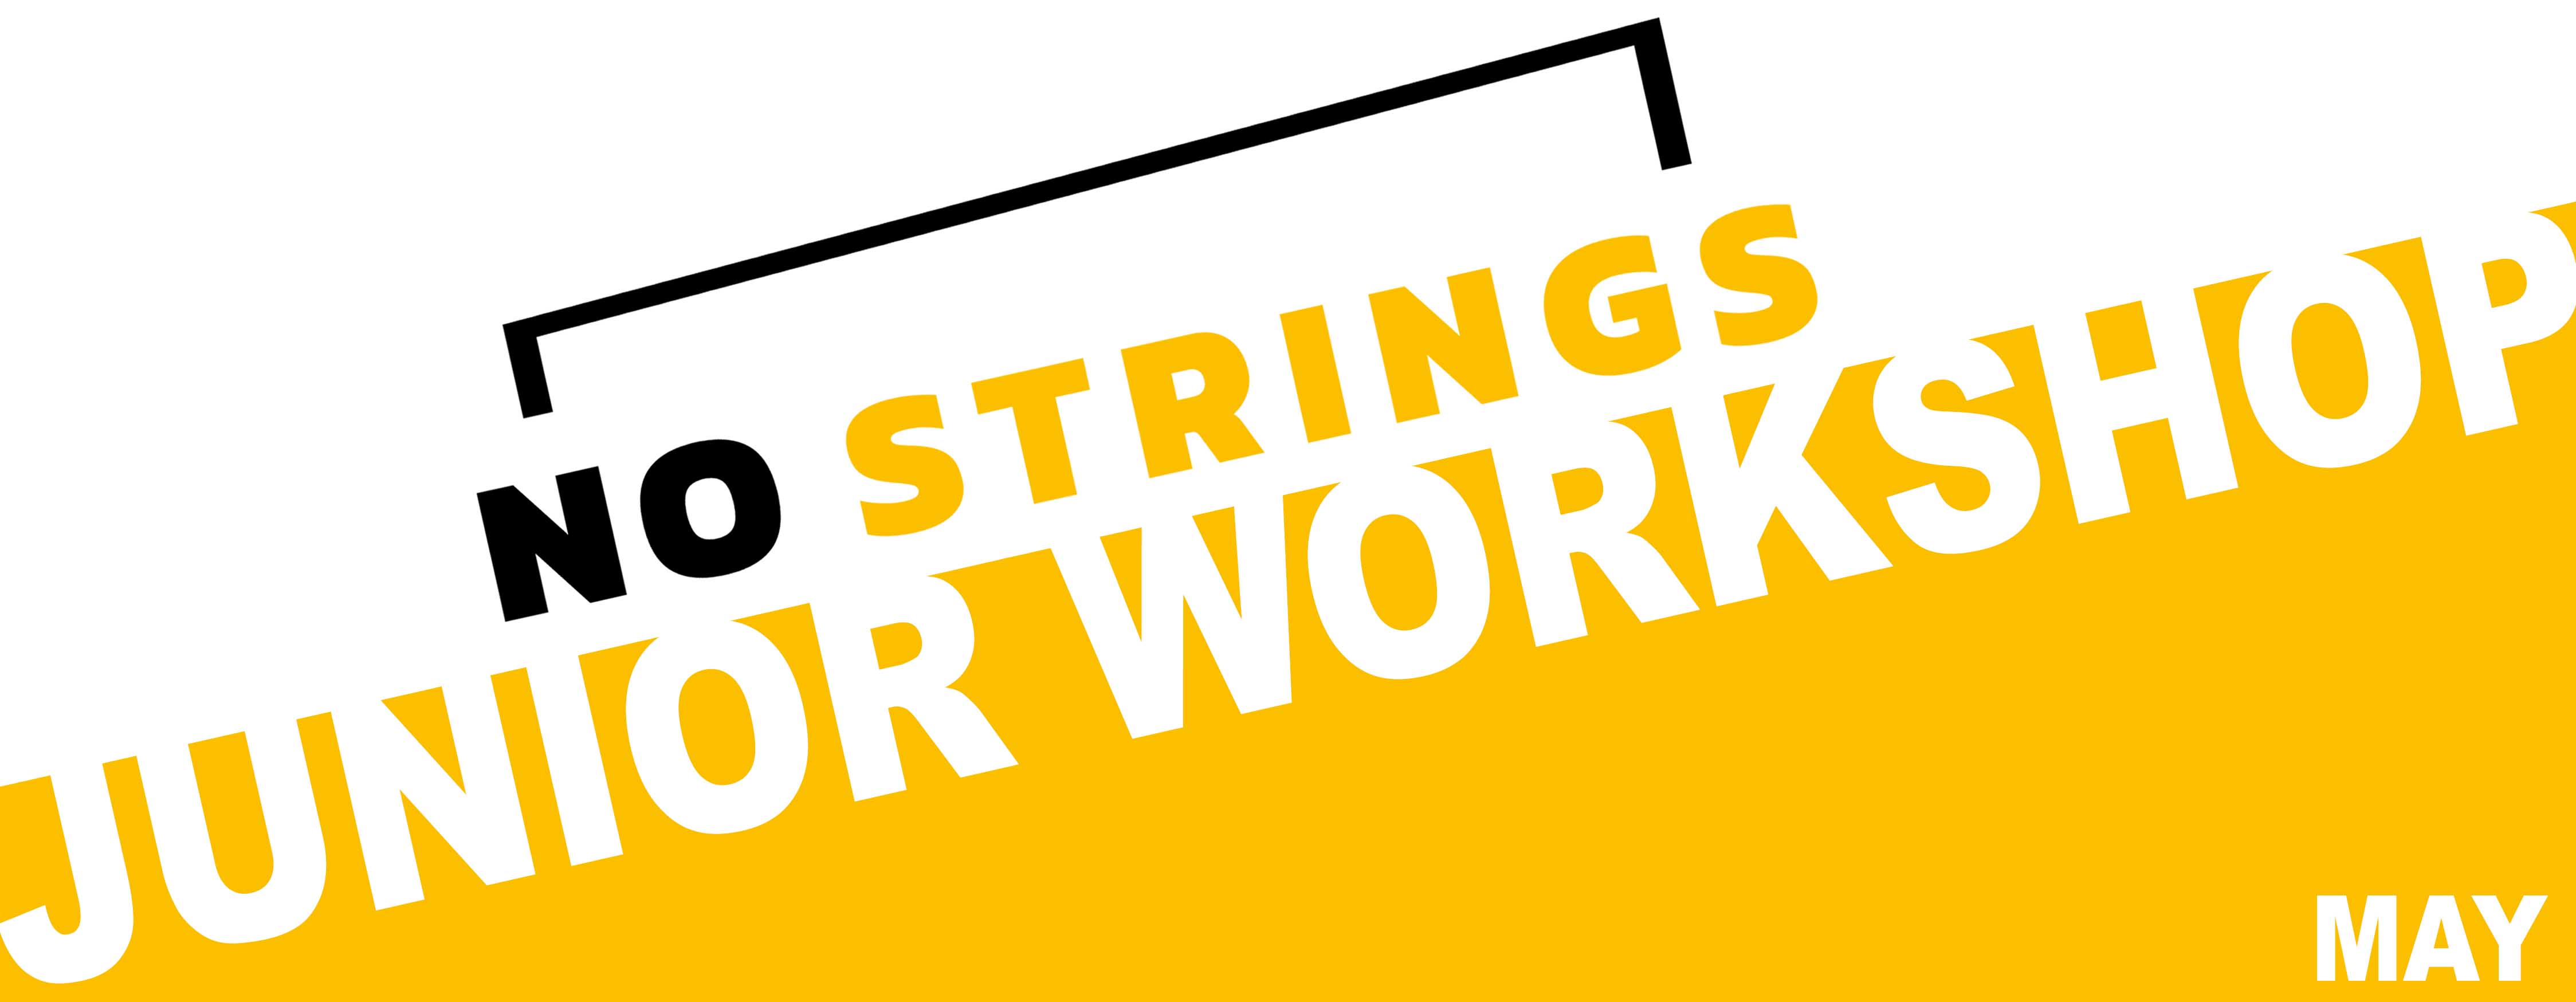 No Strings Junior Workshop copy